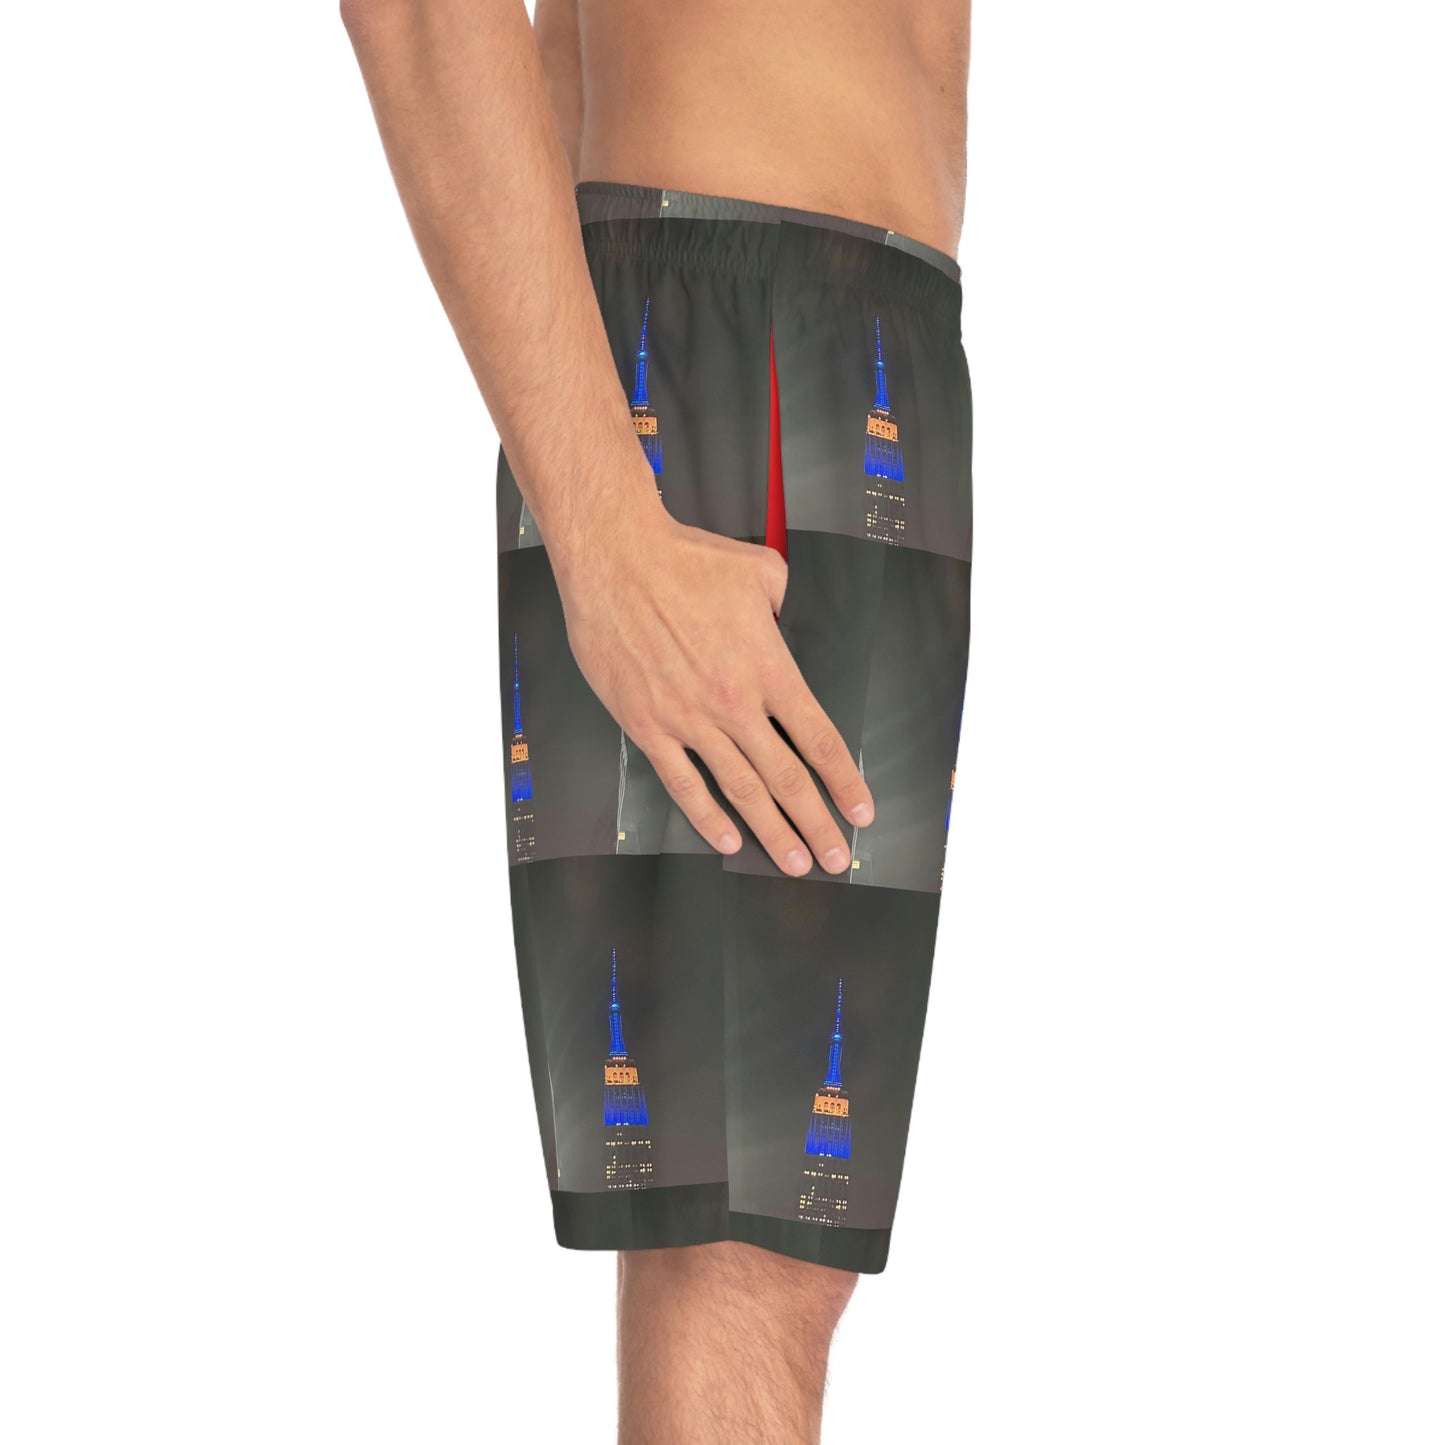 STILLGETPAID® APPAREL Men's Board Shorts (AOP)